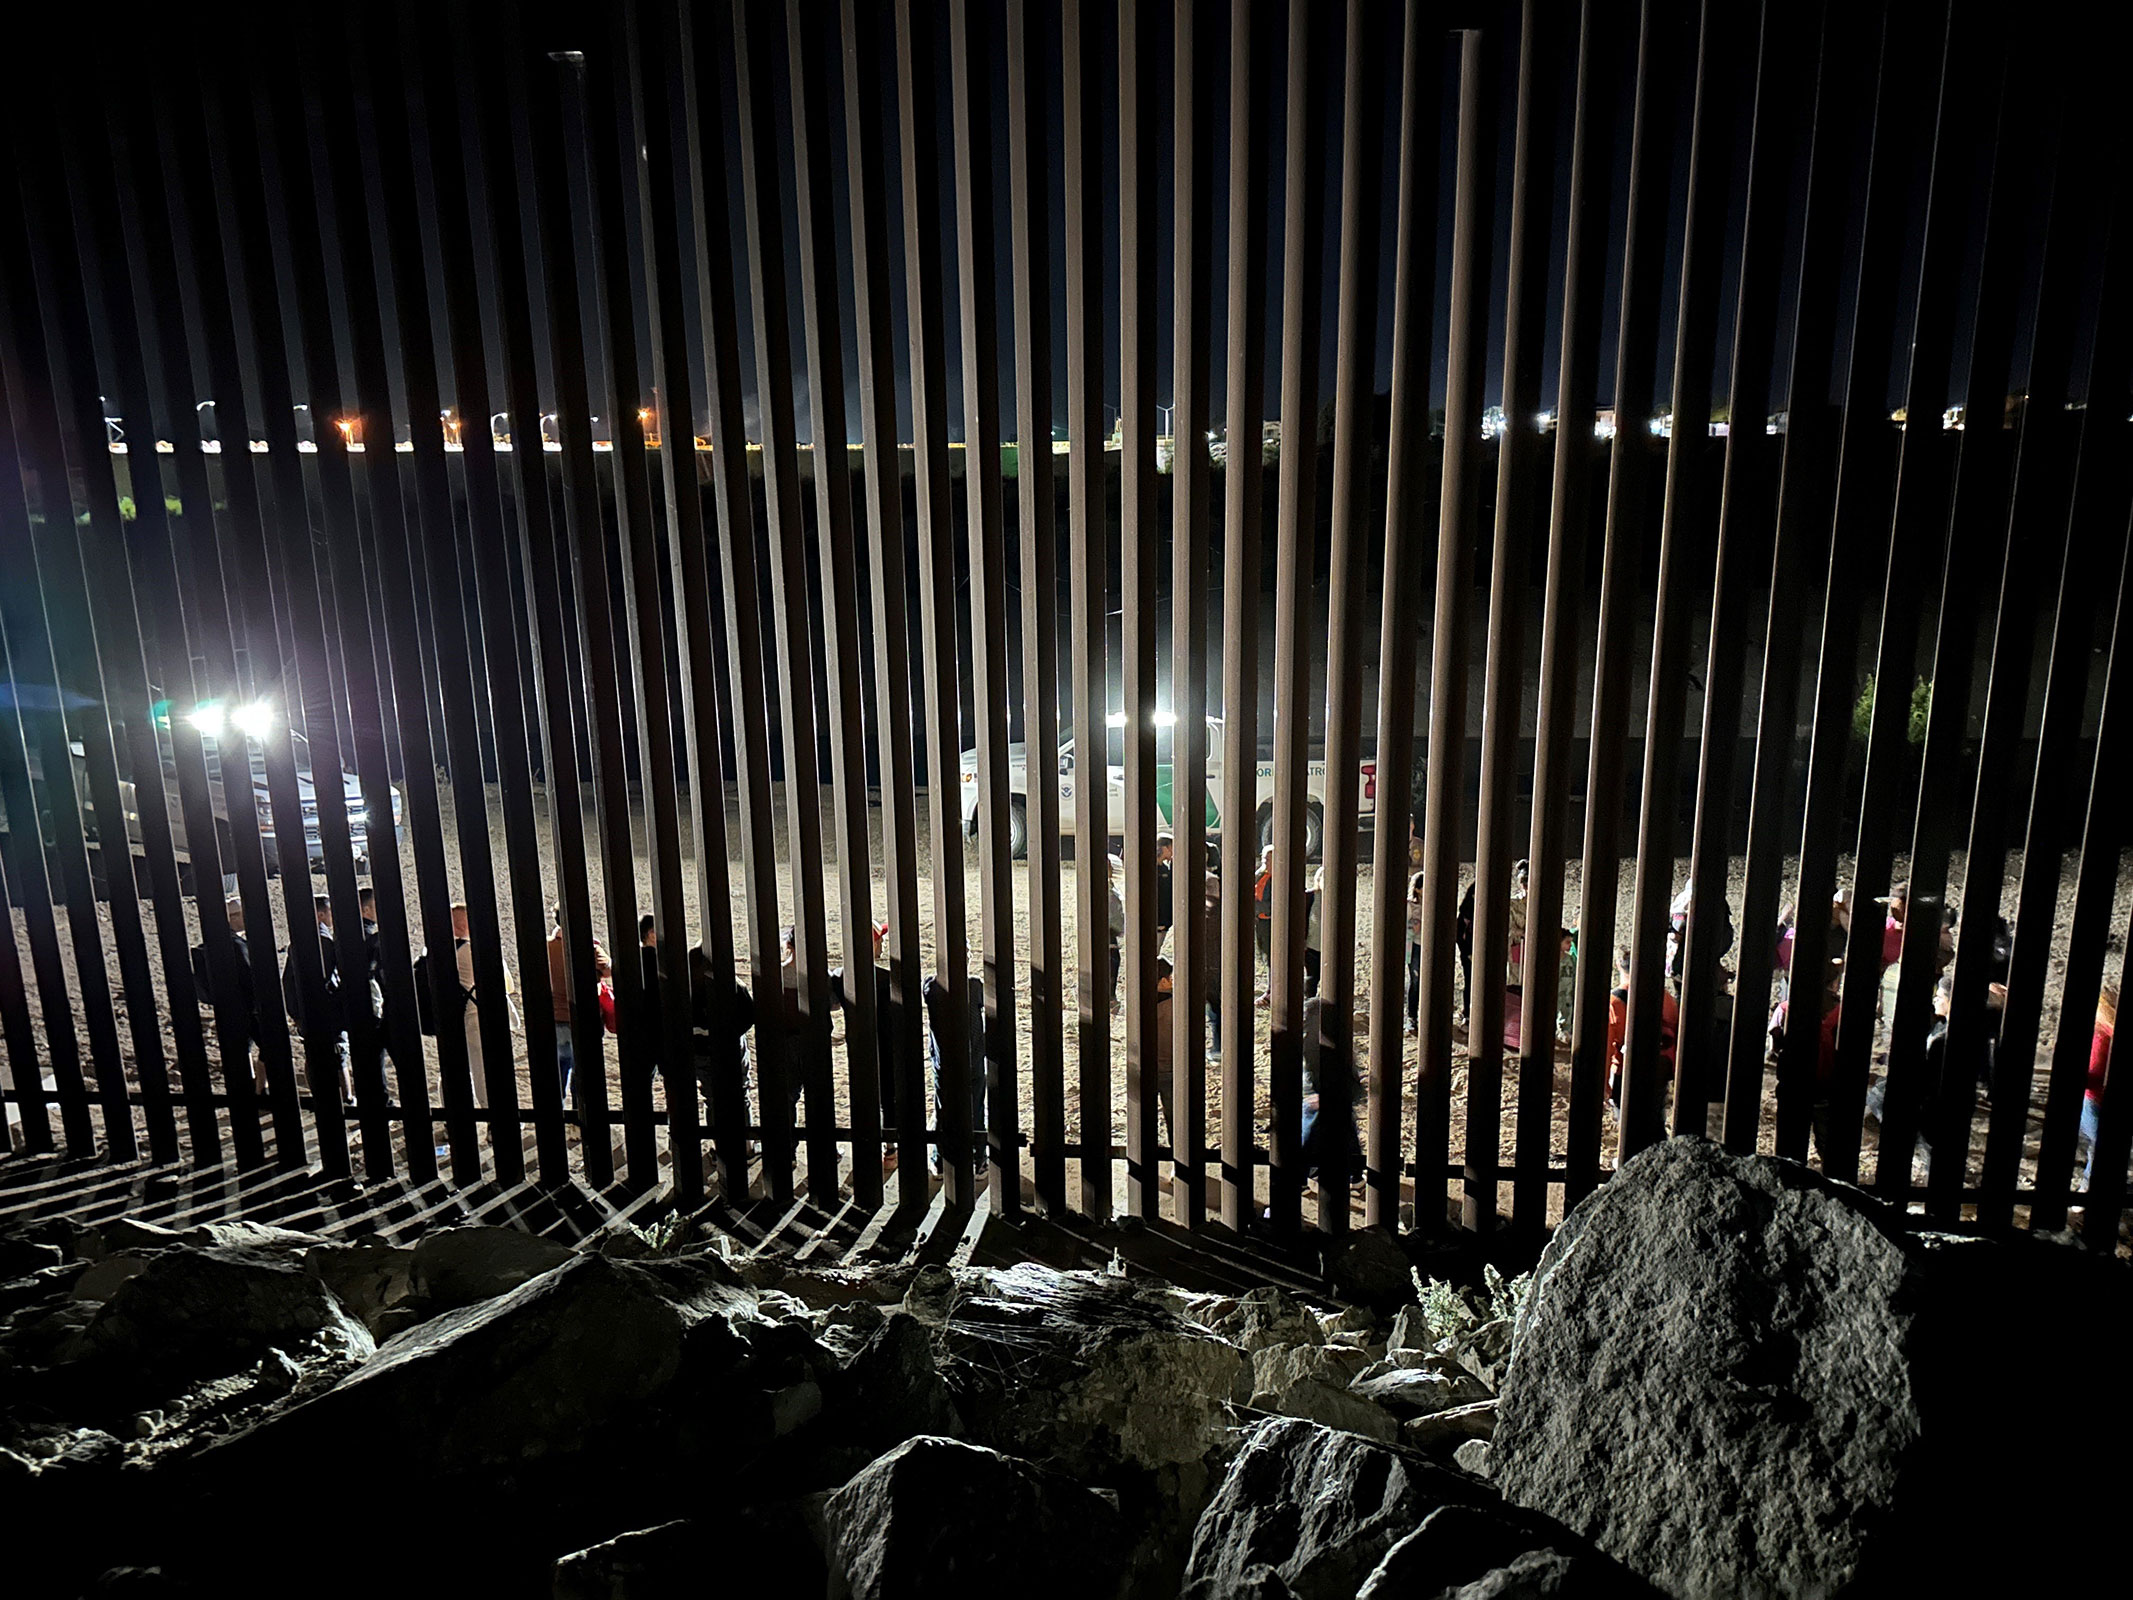 Agentes de la patrulla fronteriza procesan a un grupo de 30 inmigrantes, muchos de ellos procedentes de Sudamérica, el 3 de junio. (Crédito: Ray Stern/The Republic/USA Today Network)